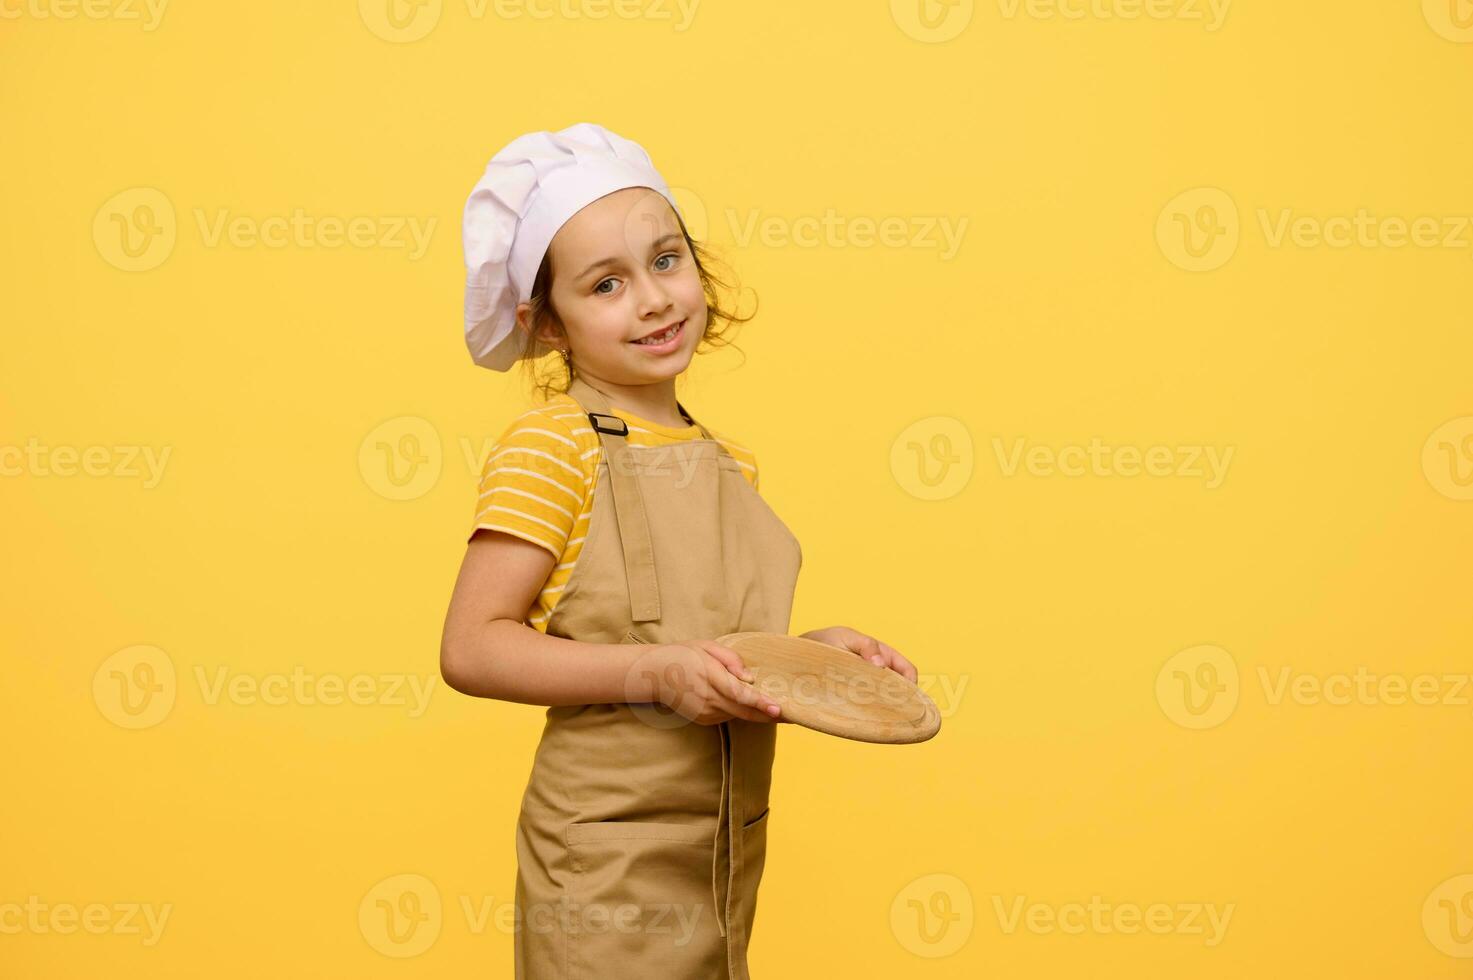 süß wenig Koch Konditor, kochen, Bäcker, Pizzaiolo, bezaubernd Kind Mädchen hält ein hölzern Planke, lächelt beim Kamera foto